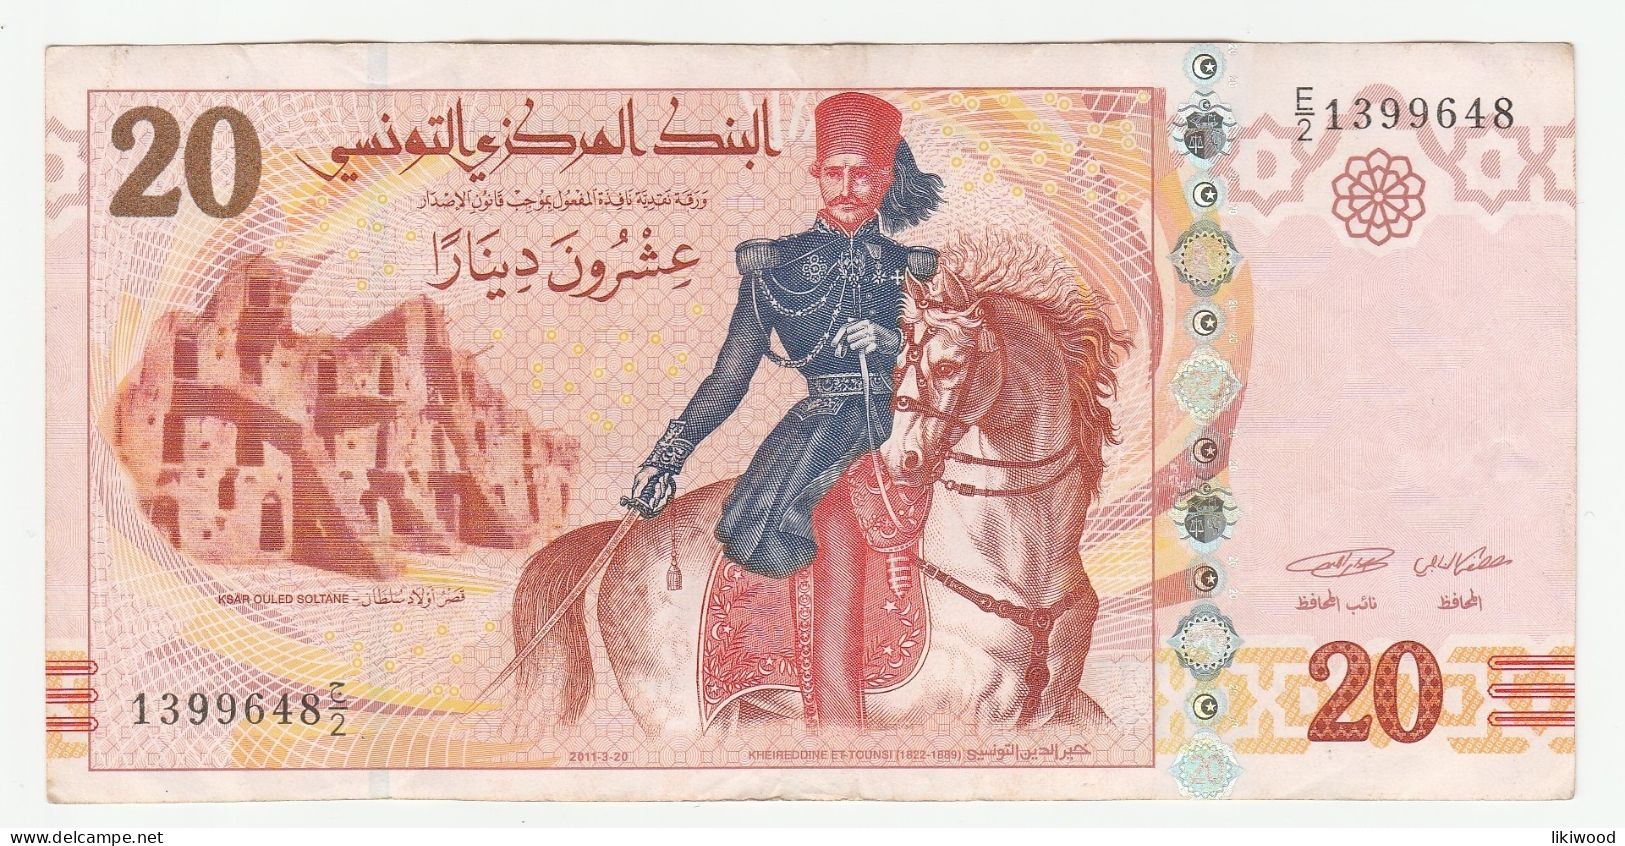 20 Dinars - 2011 - Tunisia - Khaireddine Et-Tounsi (1822-1889) Ksar Ouled Soltane - L'École Sadiki (error) - Tusesië